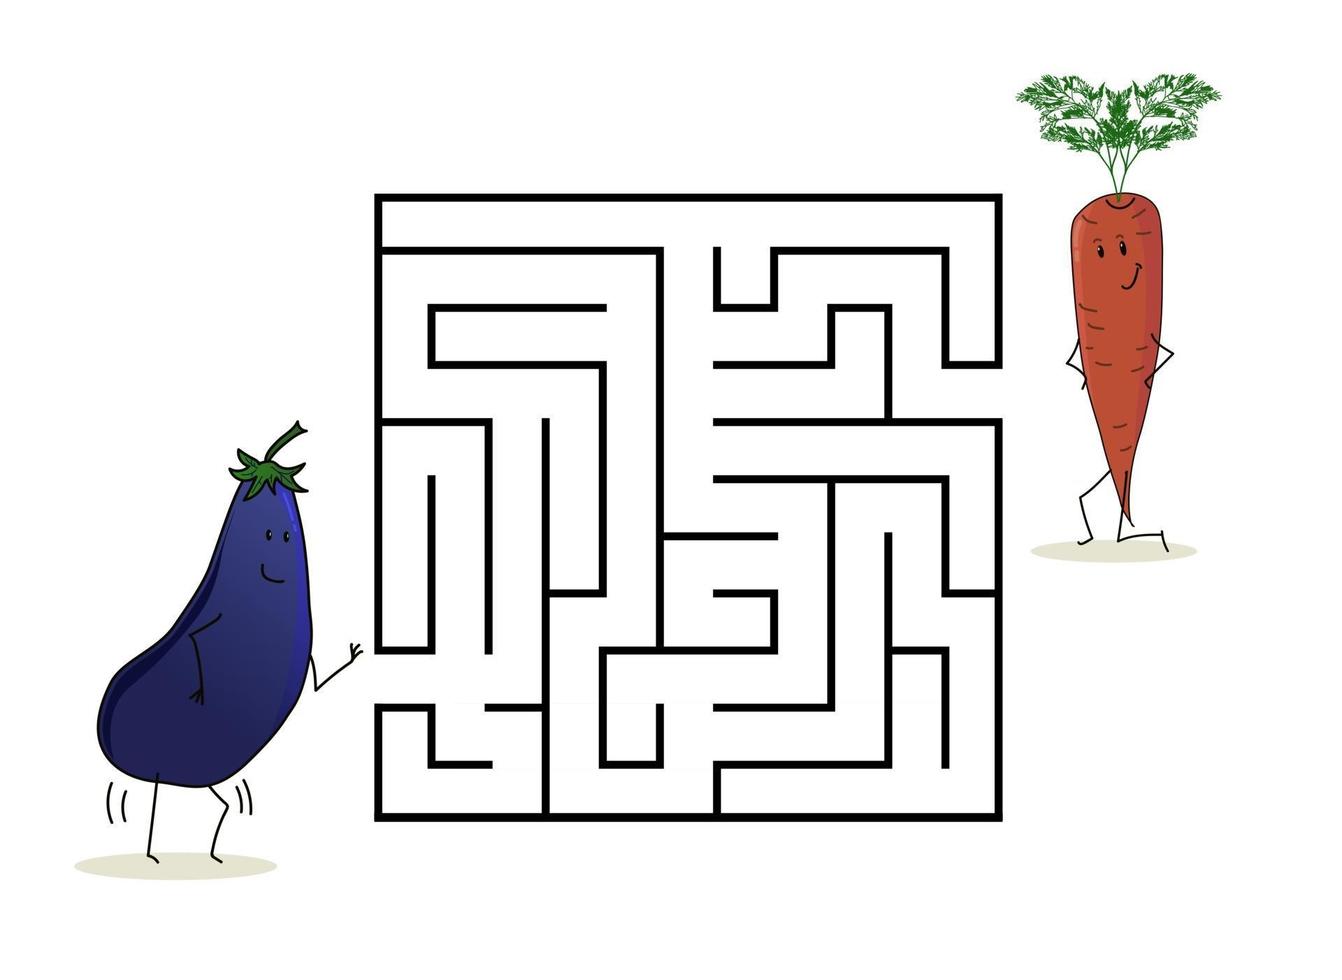 labyrinthe de labyrinthe carré avec des personnages de dessins animés. jolie carotte aubergine vecteur